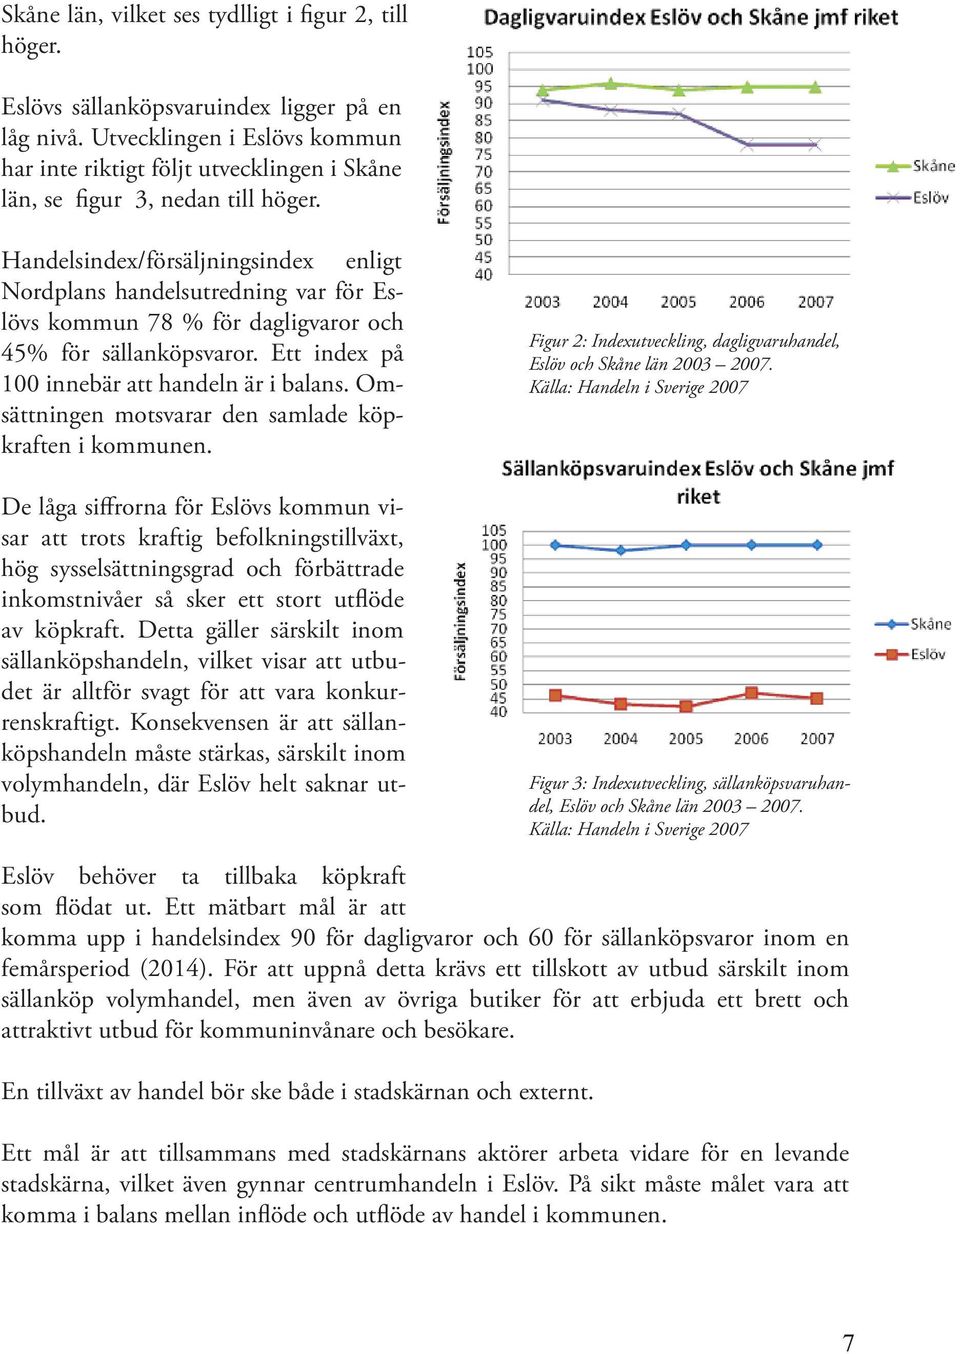 Handelsindex/försäljningsindex enligt Nordplans handelsutredning var för Eslövs kommun 78 % för dagligvaror och 45% för sällanköpsvaror. Ett index på 100 innebär att handeln är i balans.